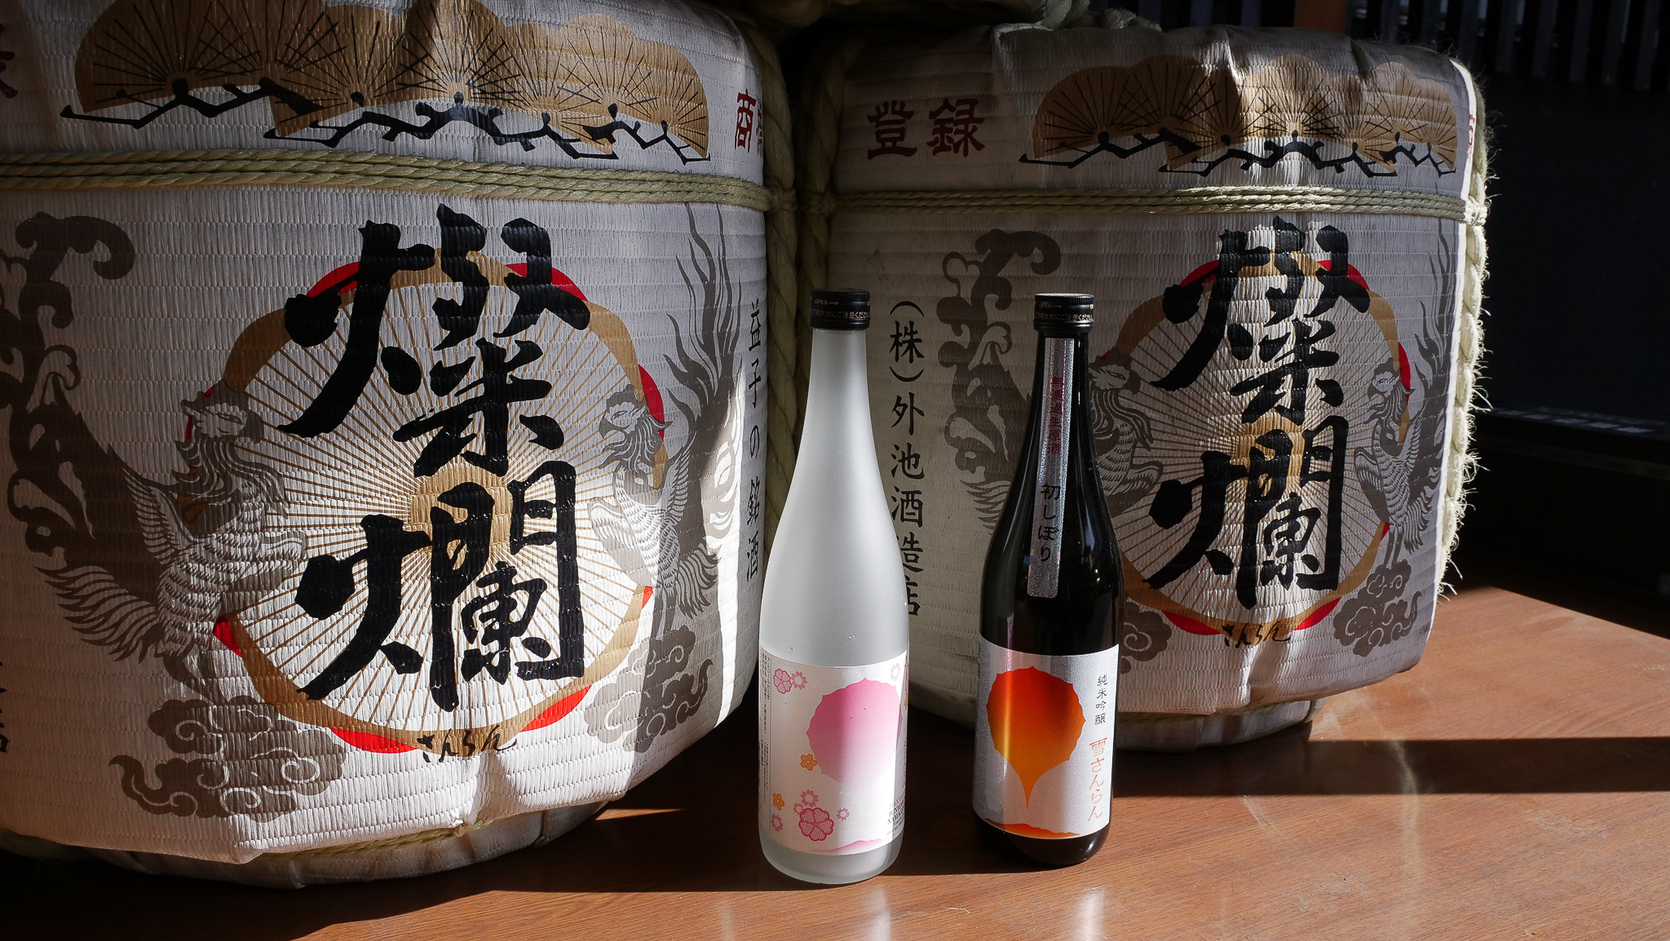 Tonoike sake brewery